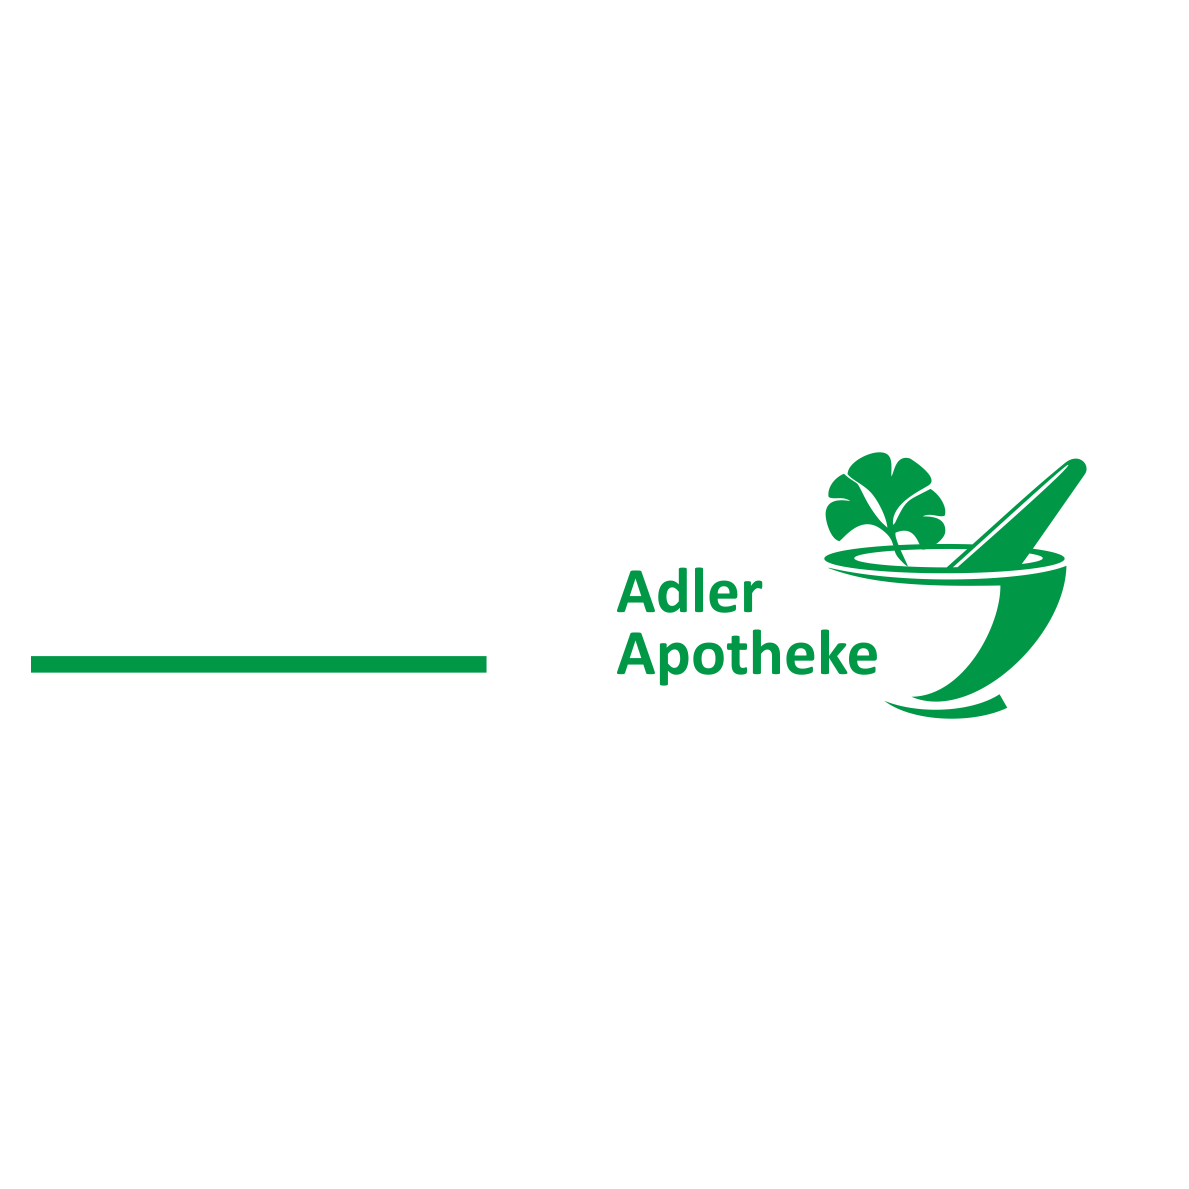 Adler Apotheke in Rodgau - Logo